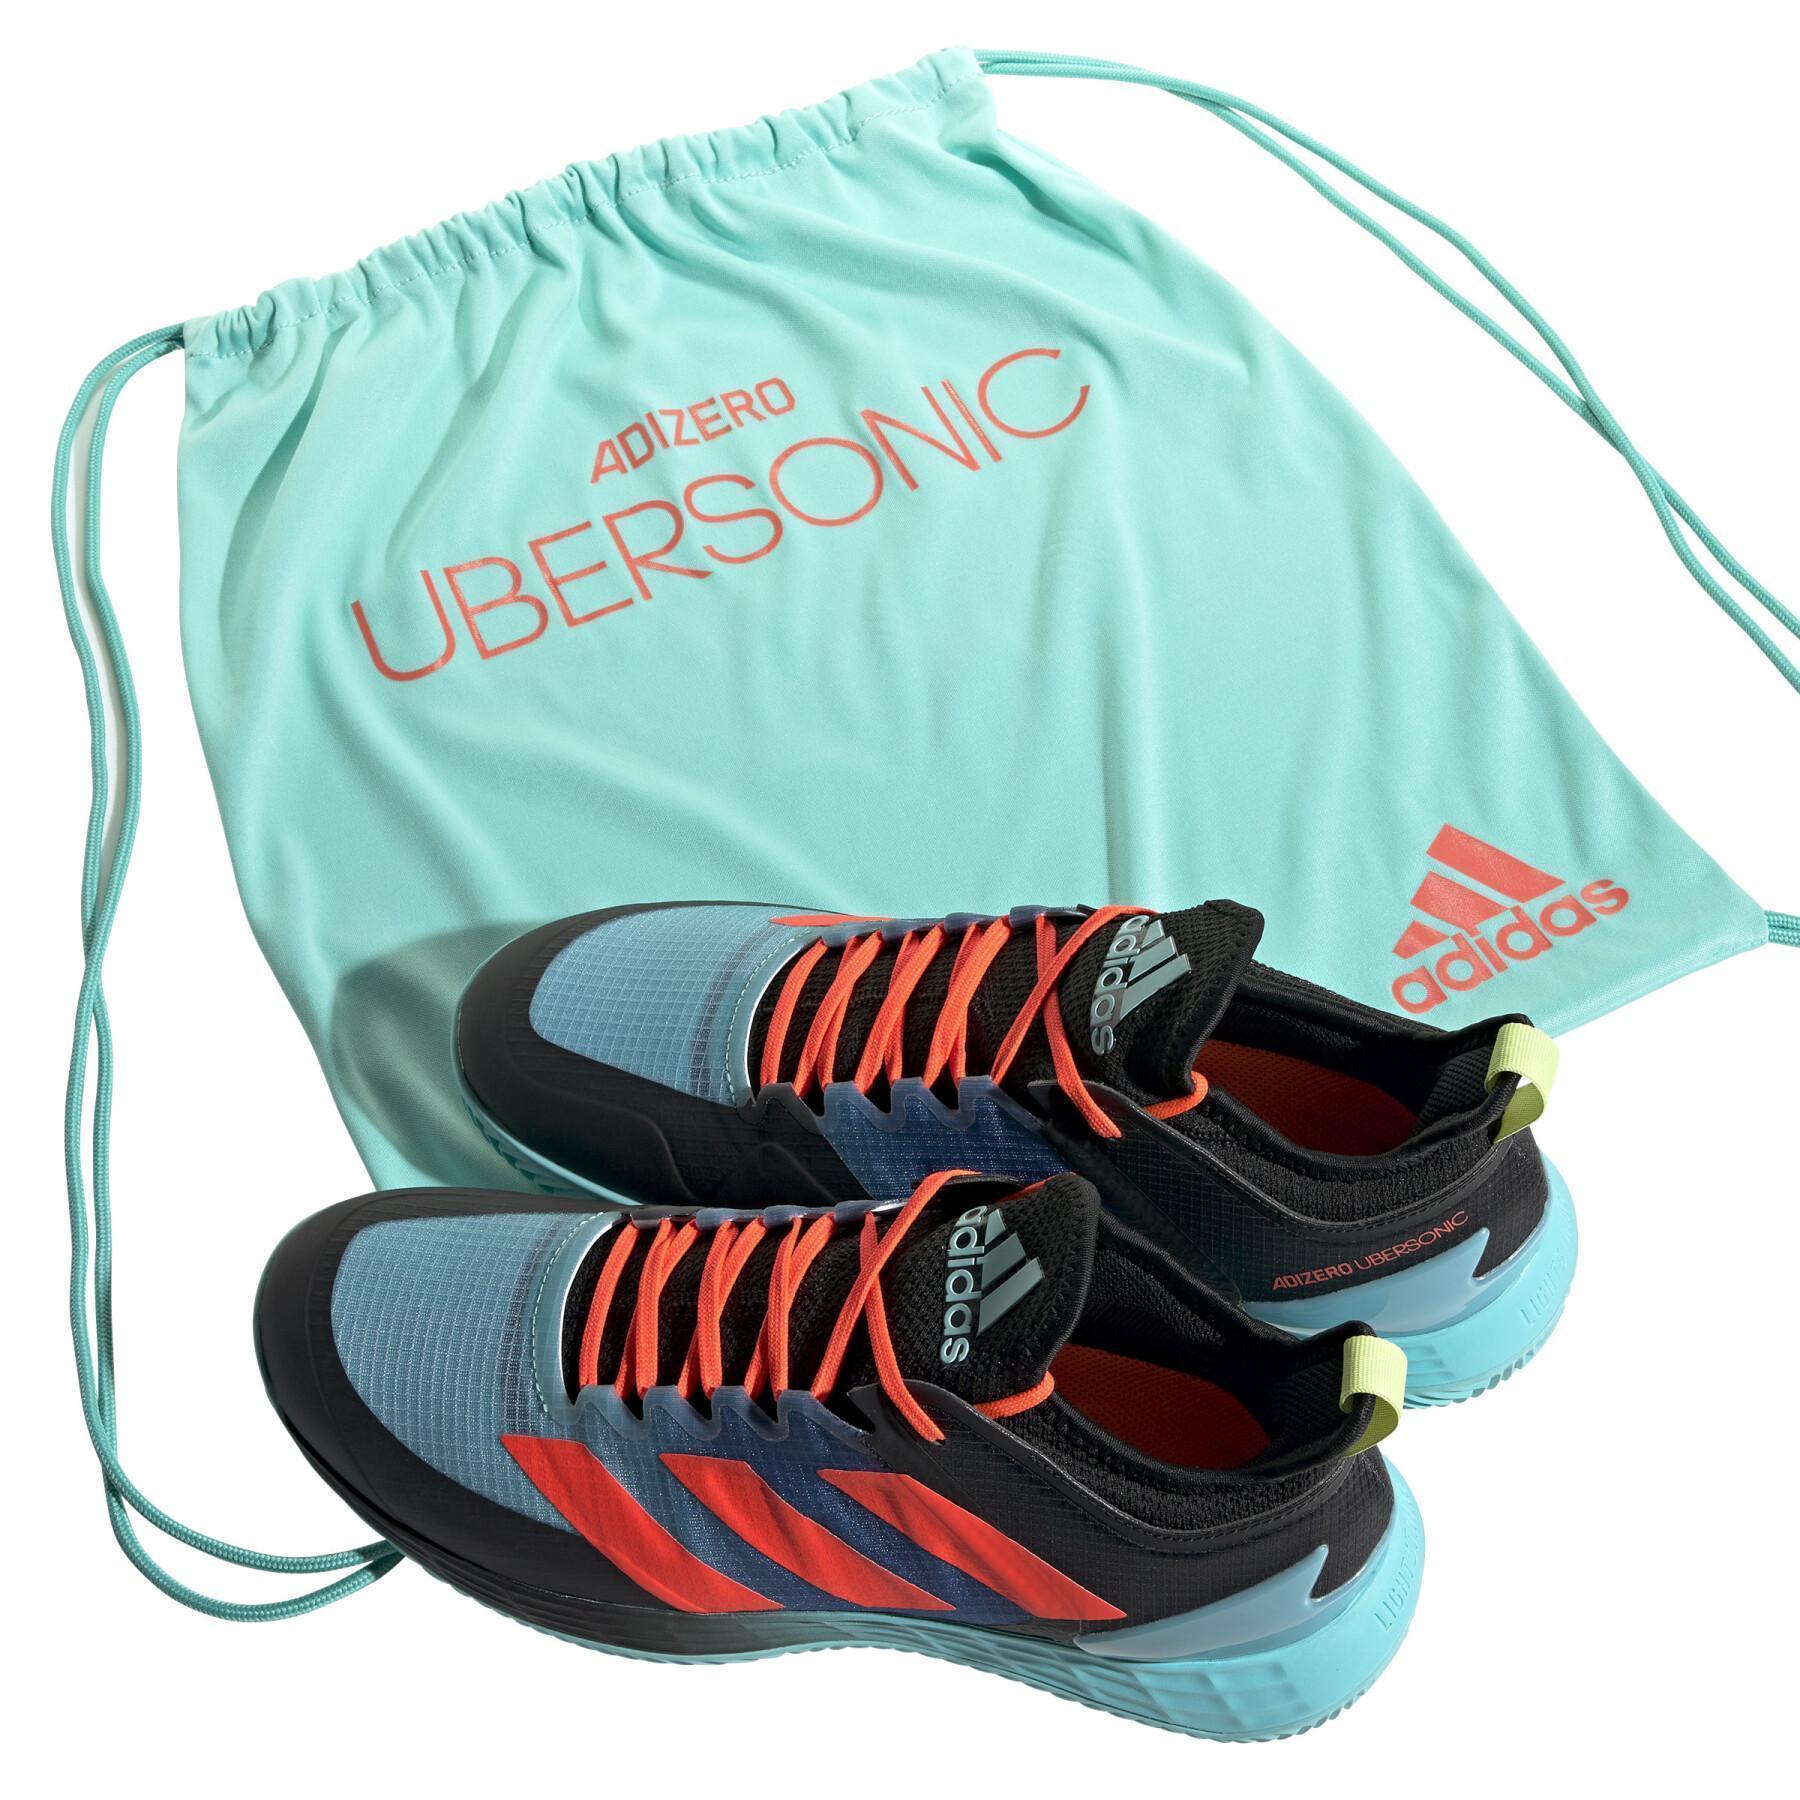 Buty tenisowe z gliny Adidas Adizero Ubersonic 4